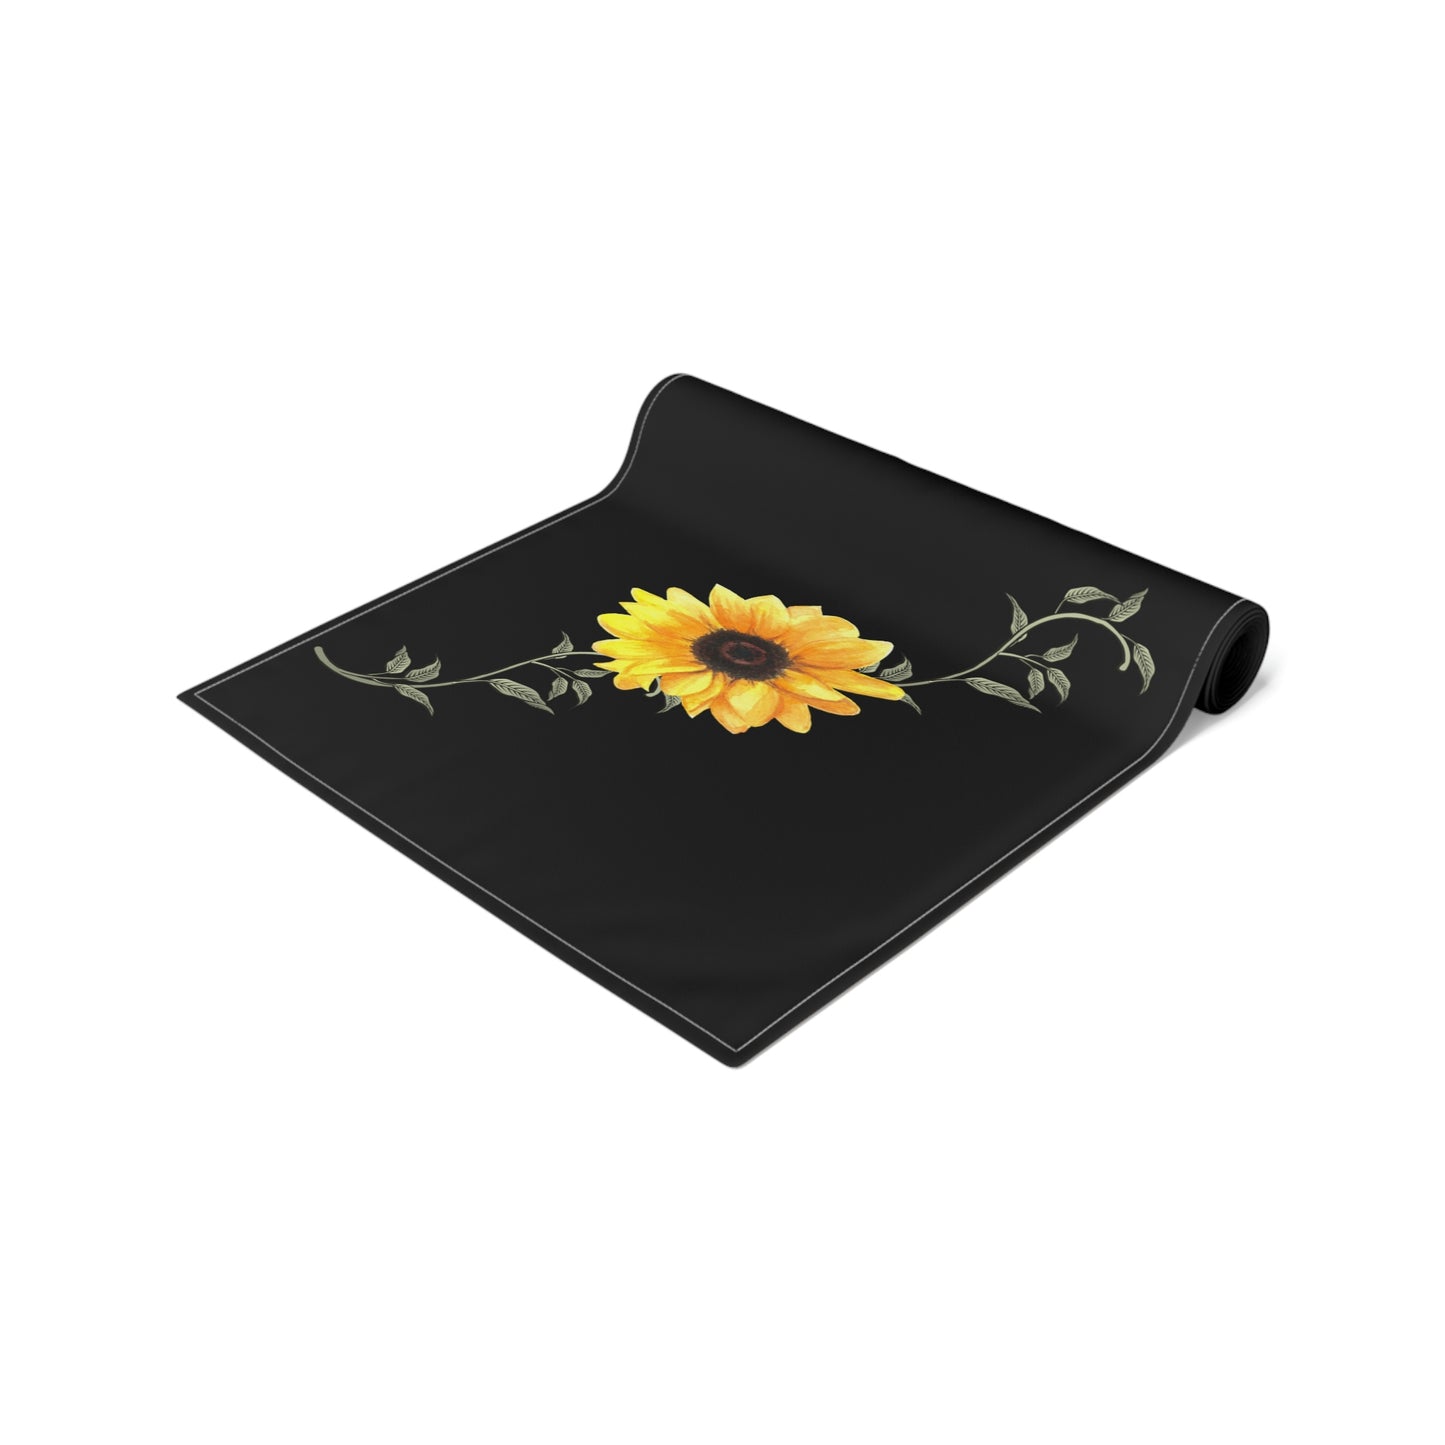 Sunflower Table Runner / Summer Table Runner / Floral Table Decor